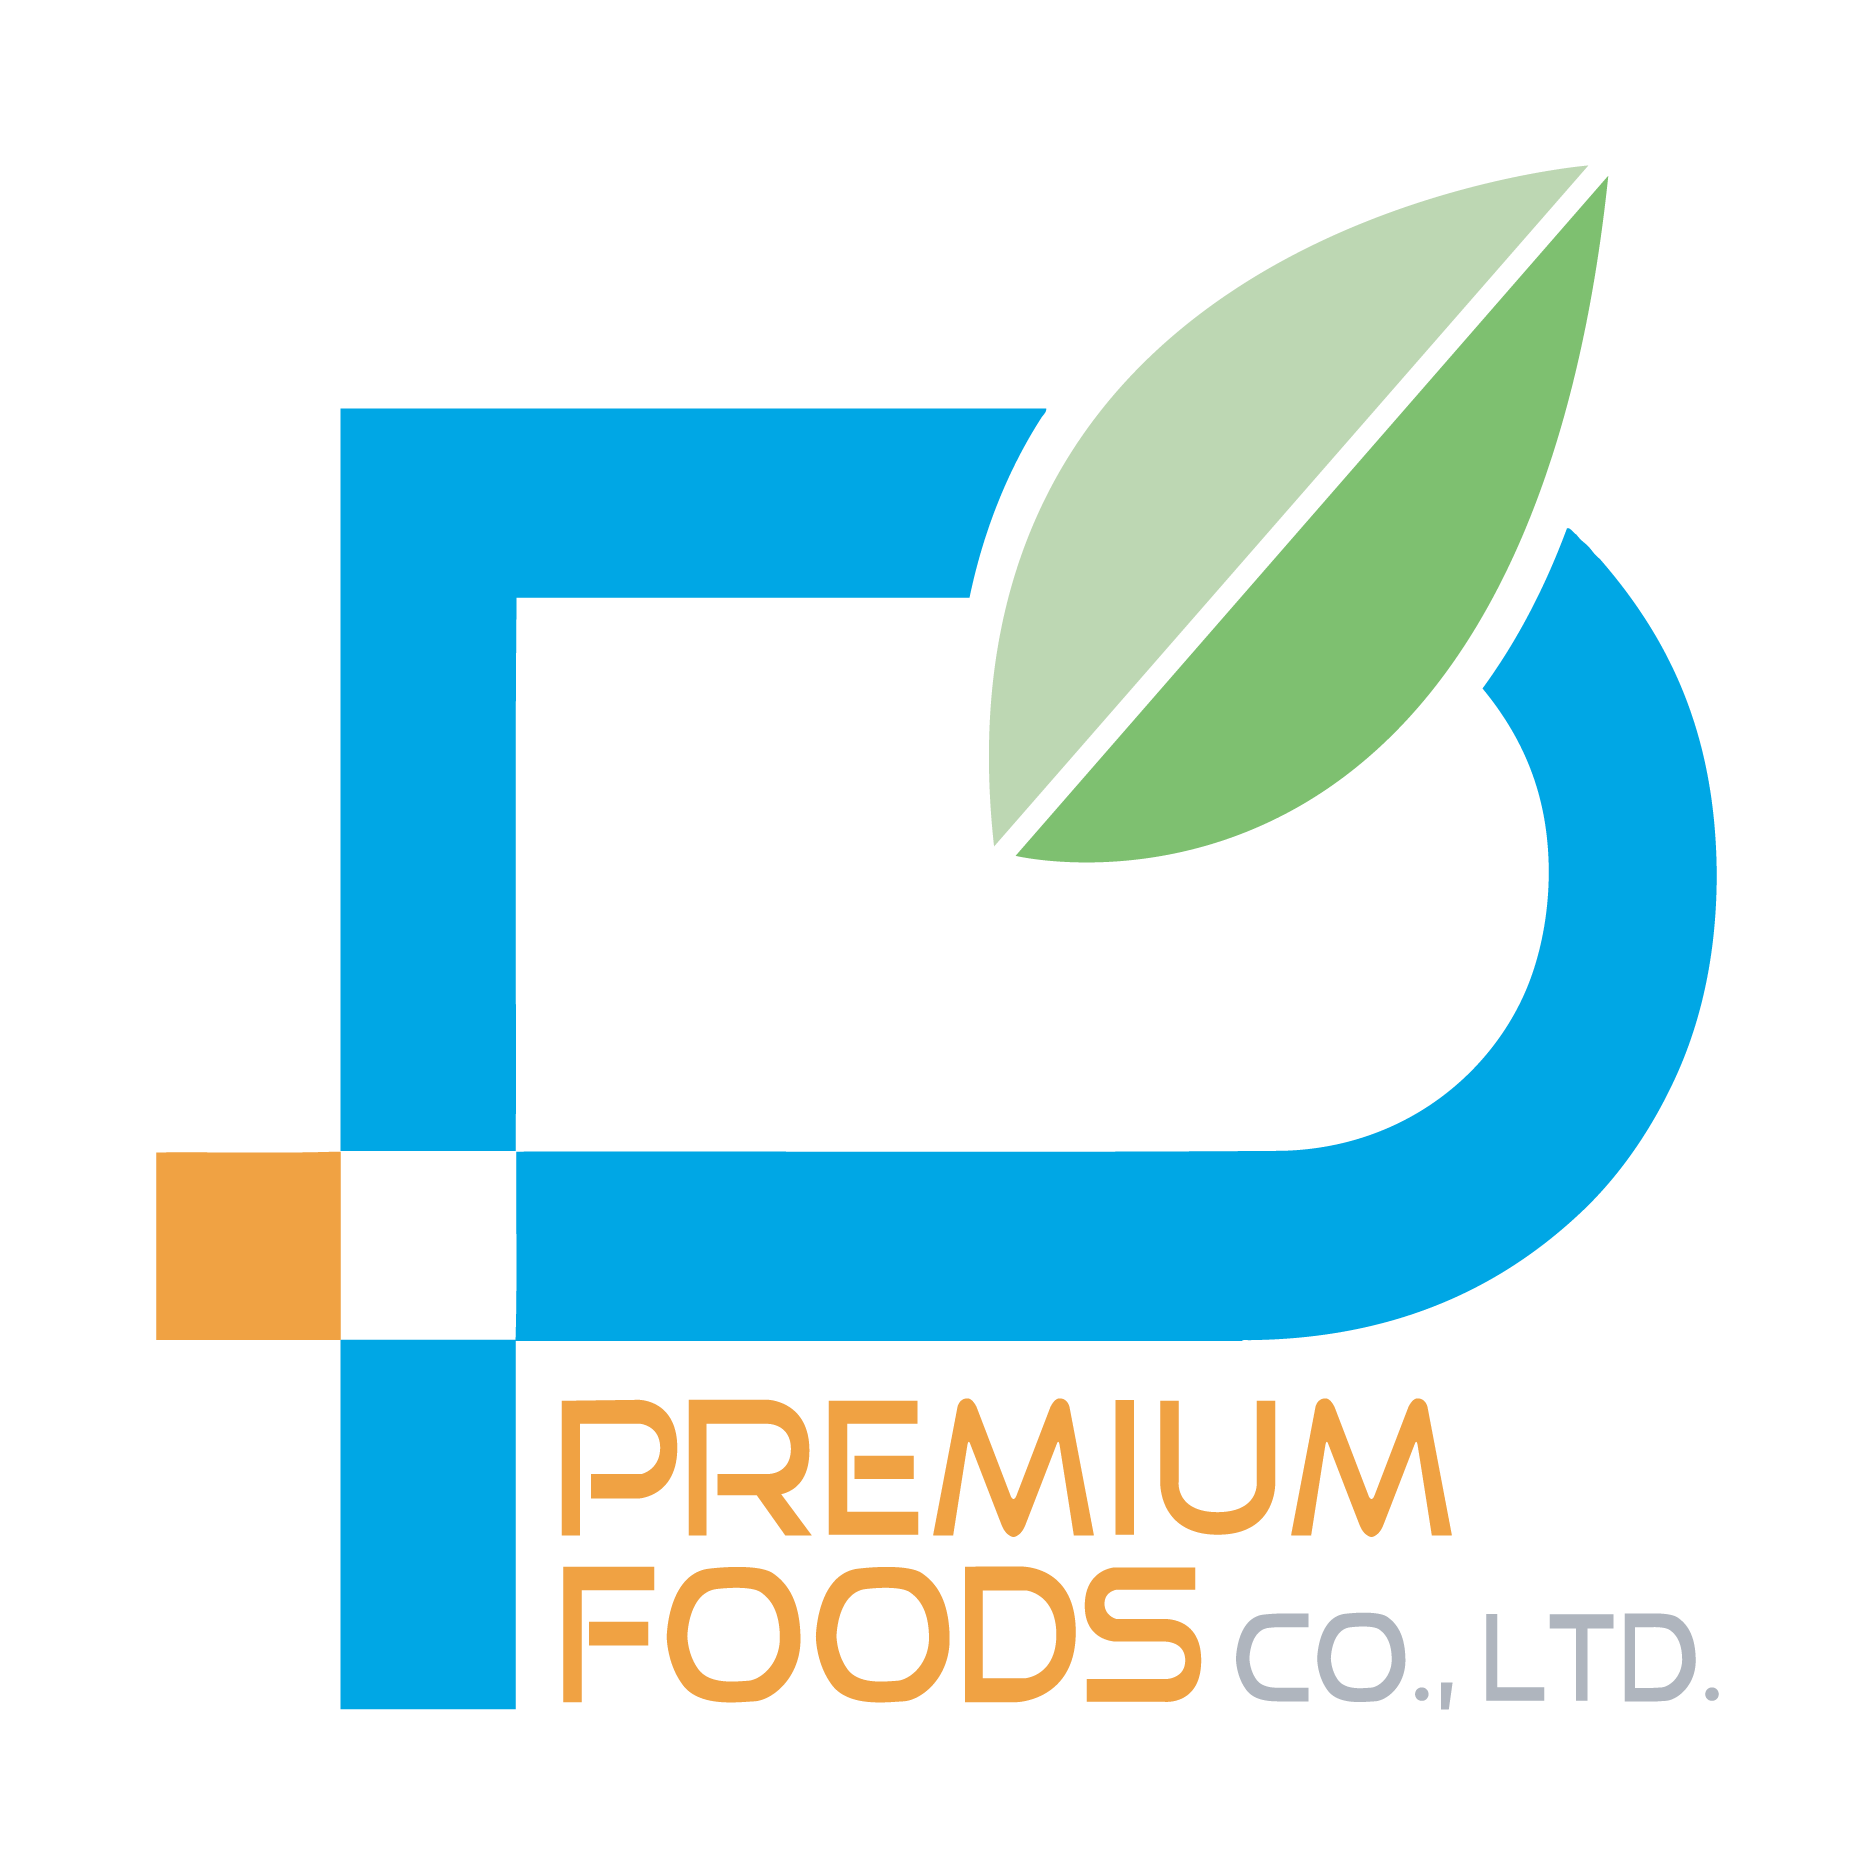 Premium Foods Co.,Ltd.